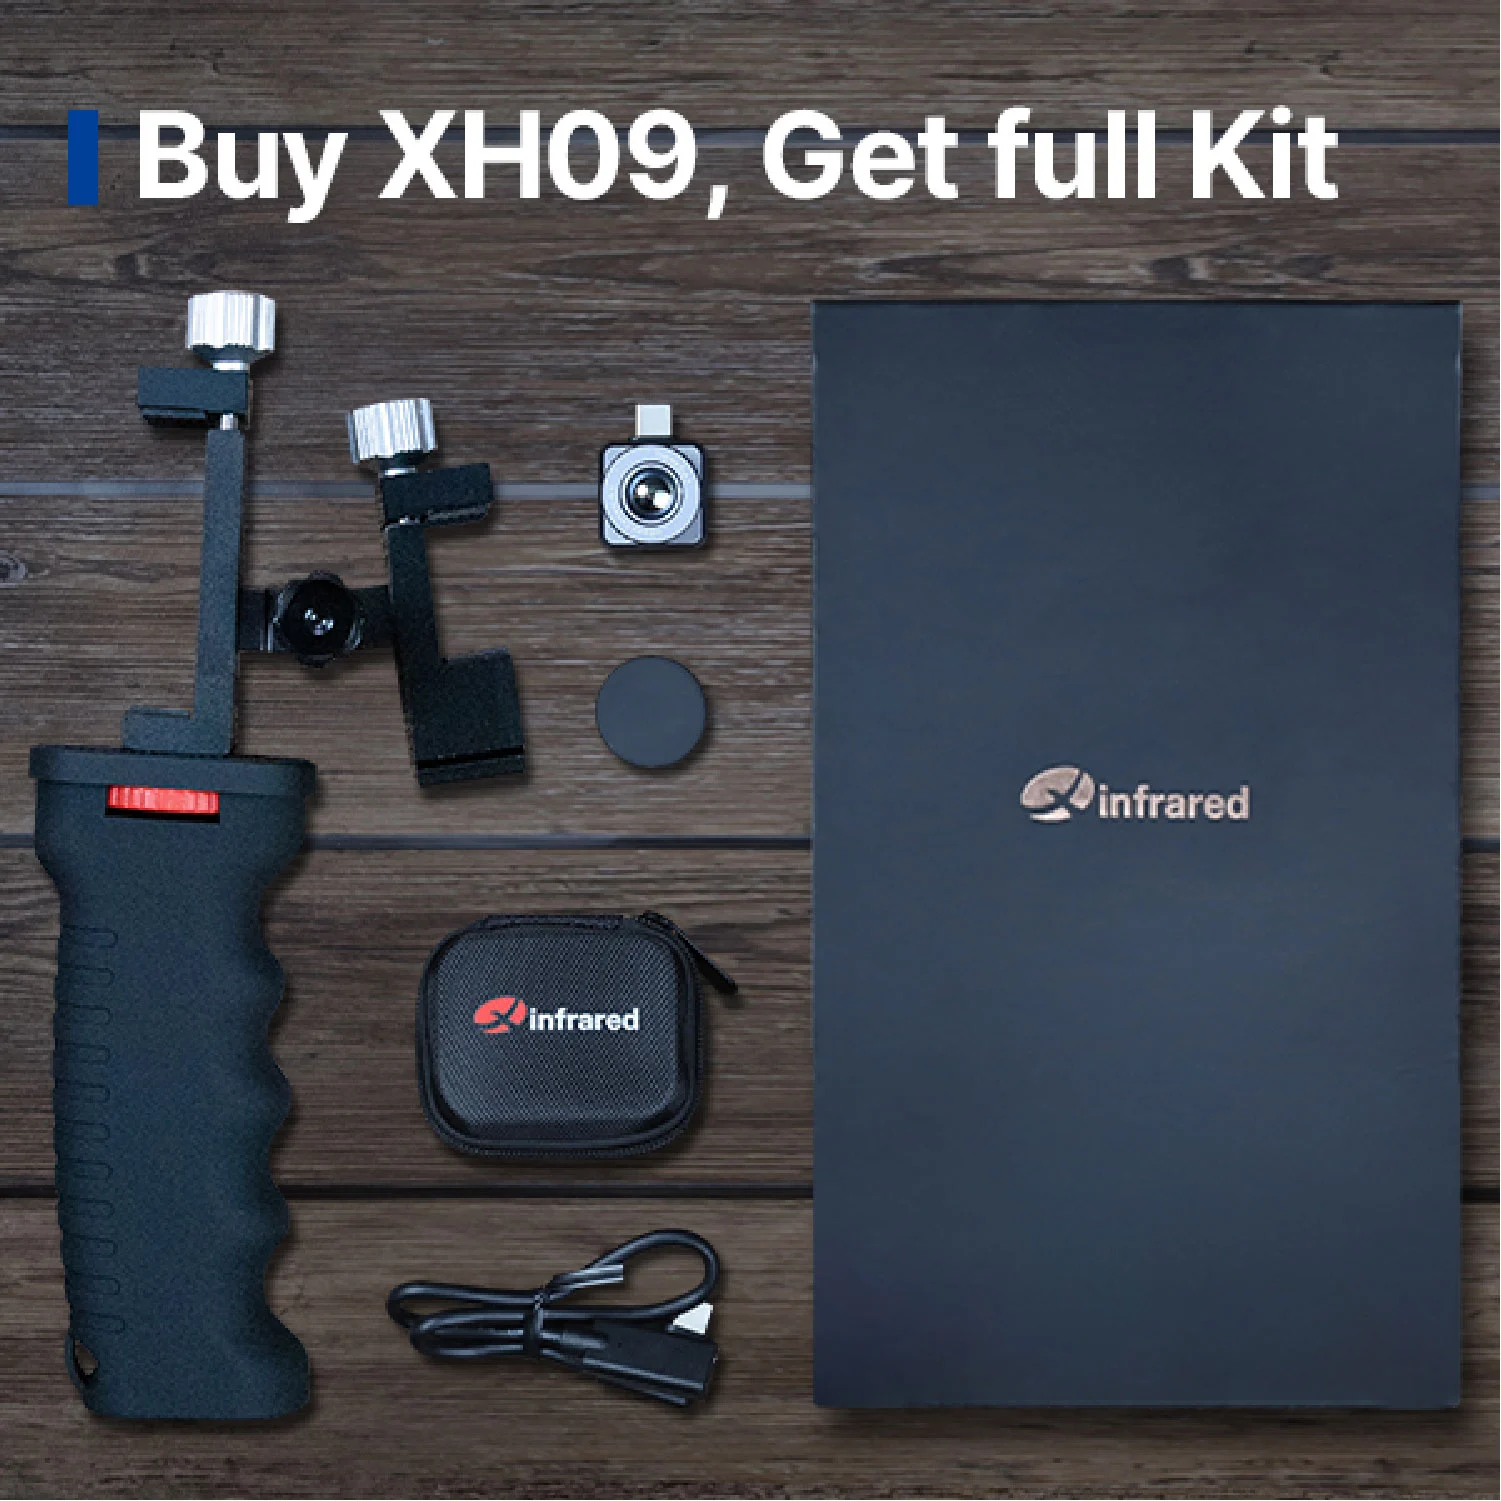 Купите XH09, получите полный комплект